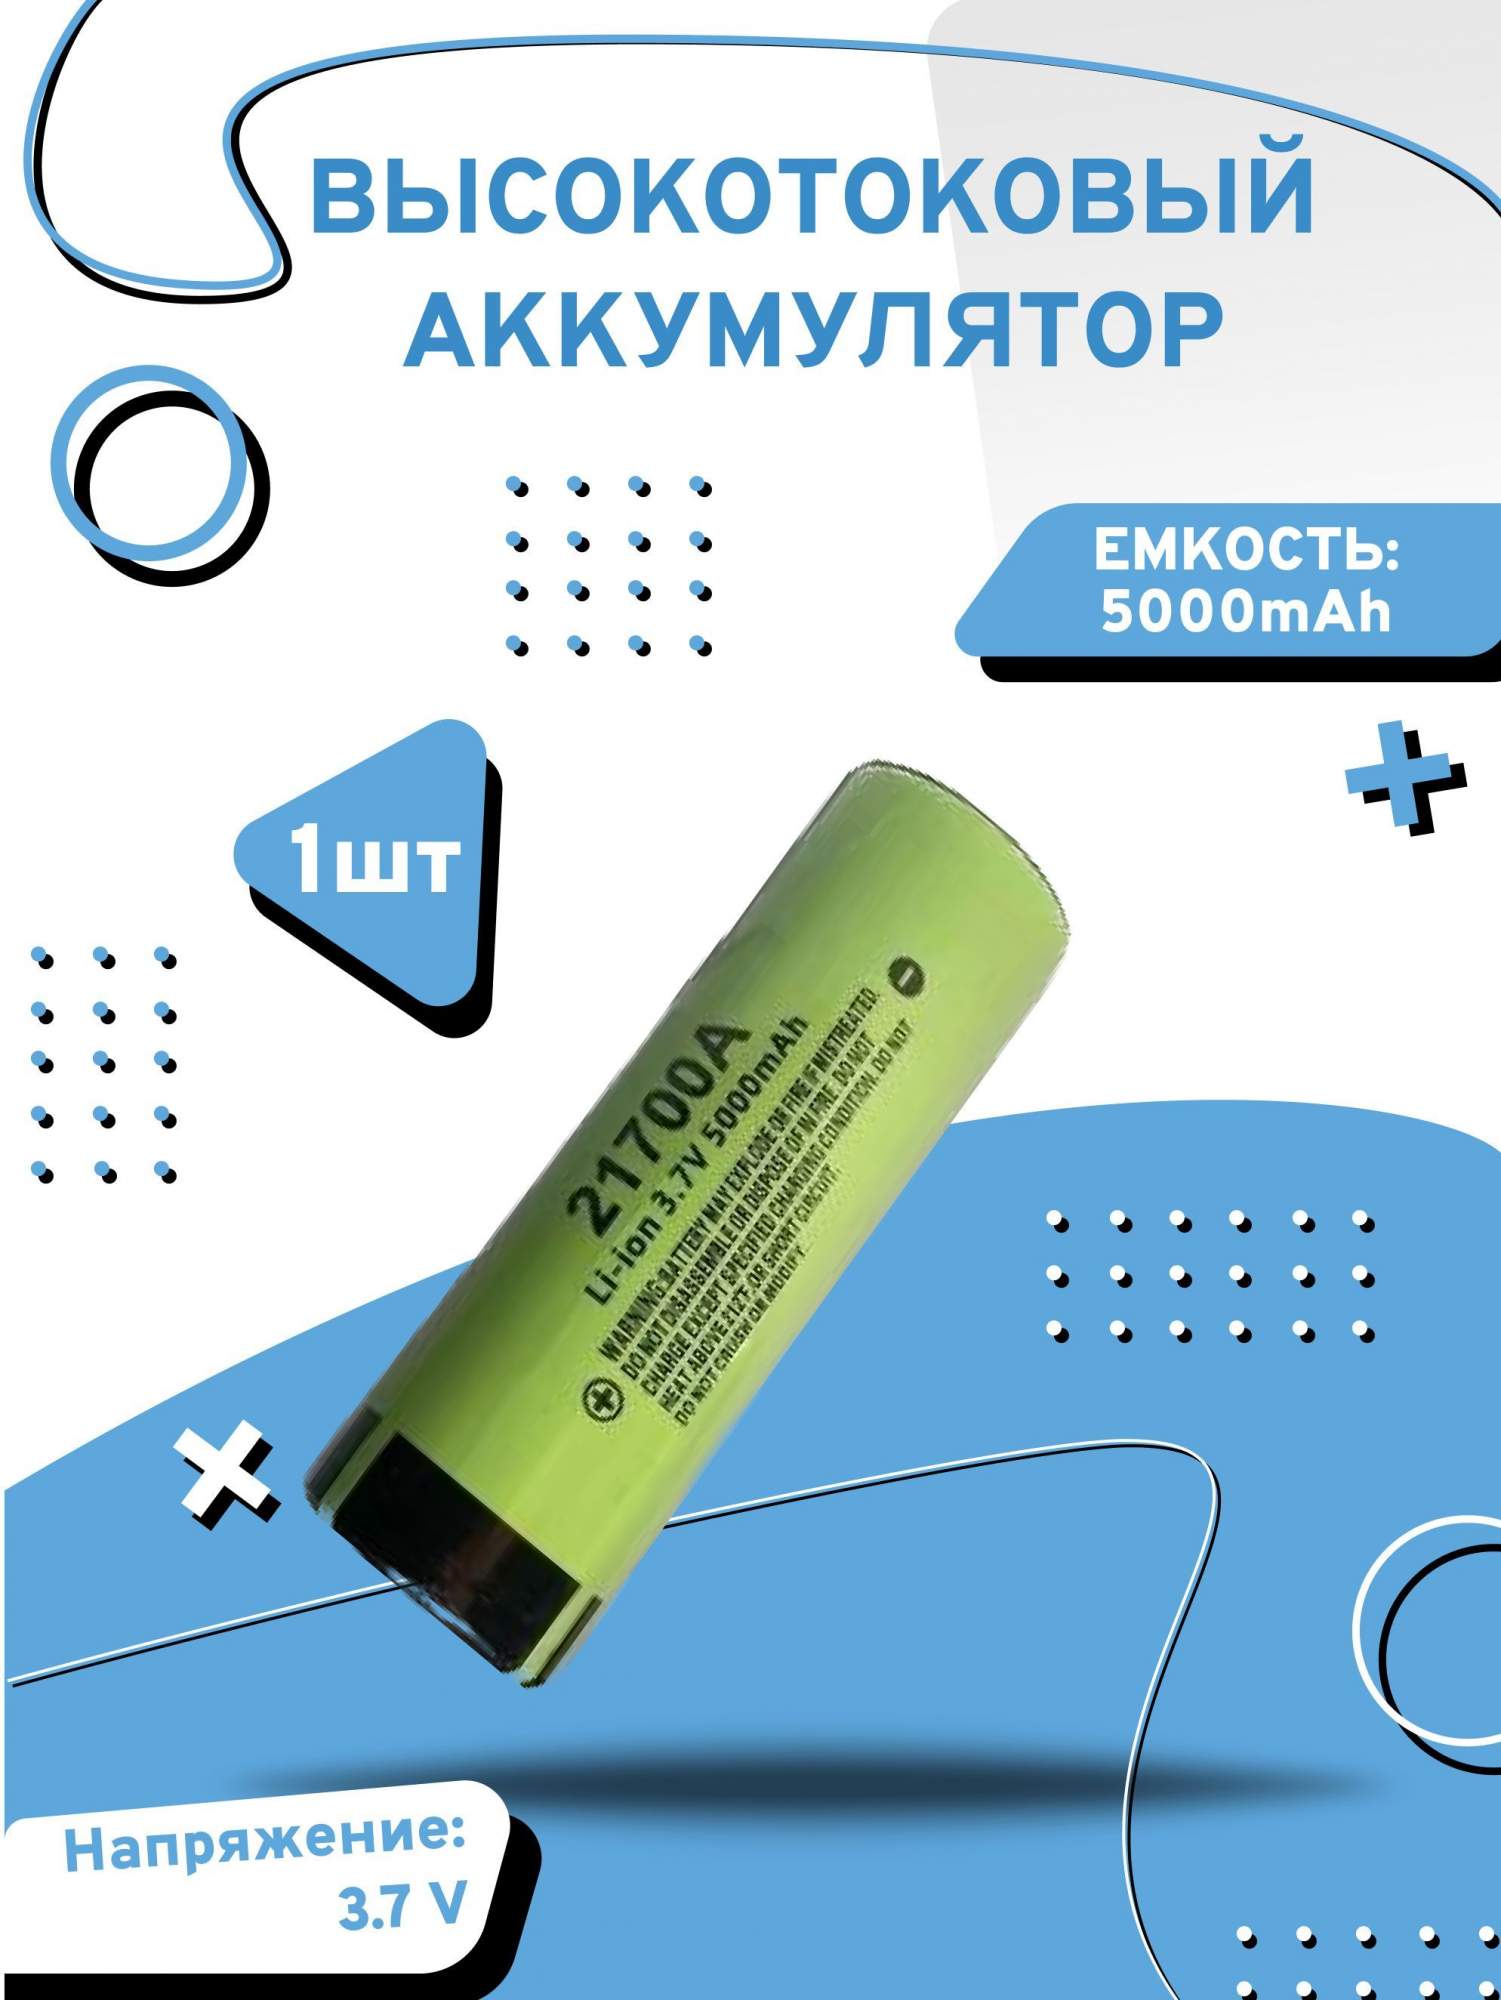 Аккумулятор высокотоковый Axu motors ncr21700,1 шт - купить в Москве, цены на Мегамаркет | 600015256563